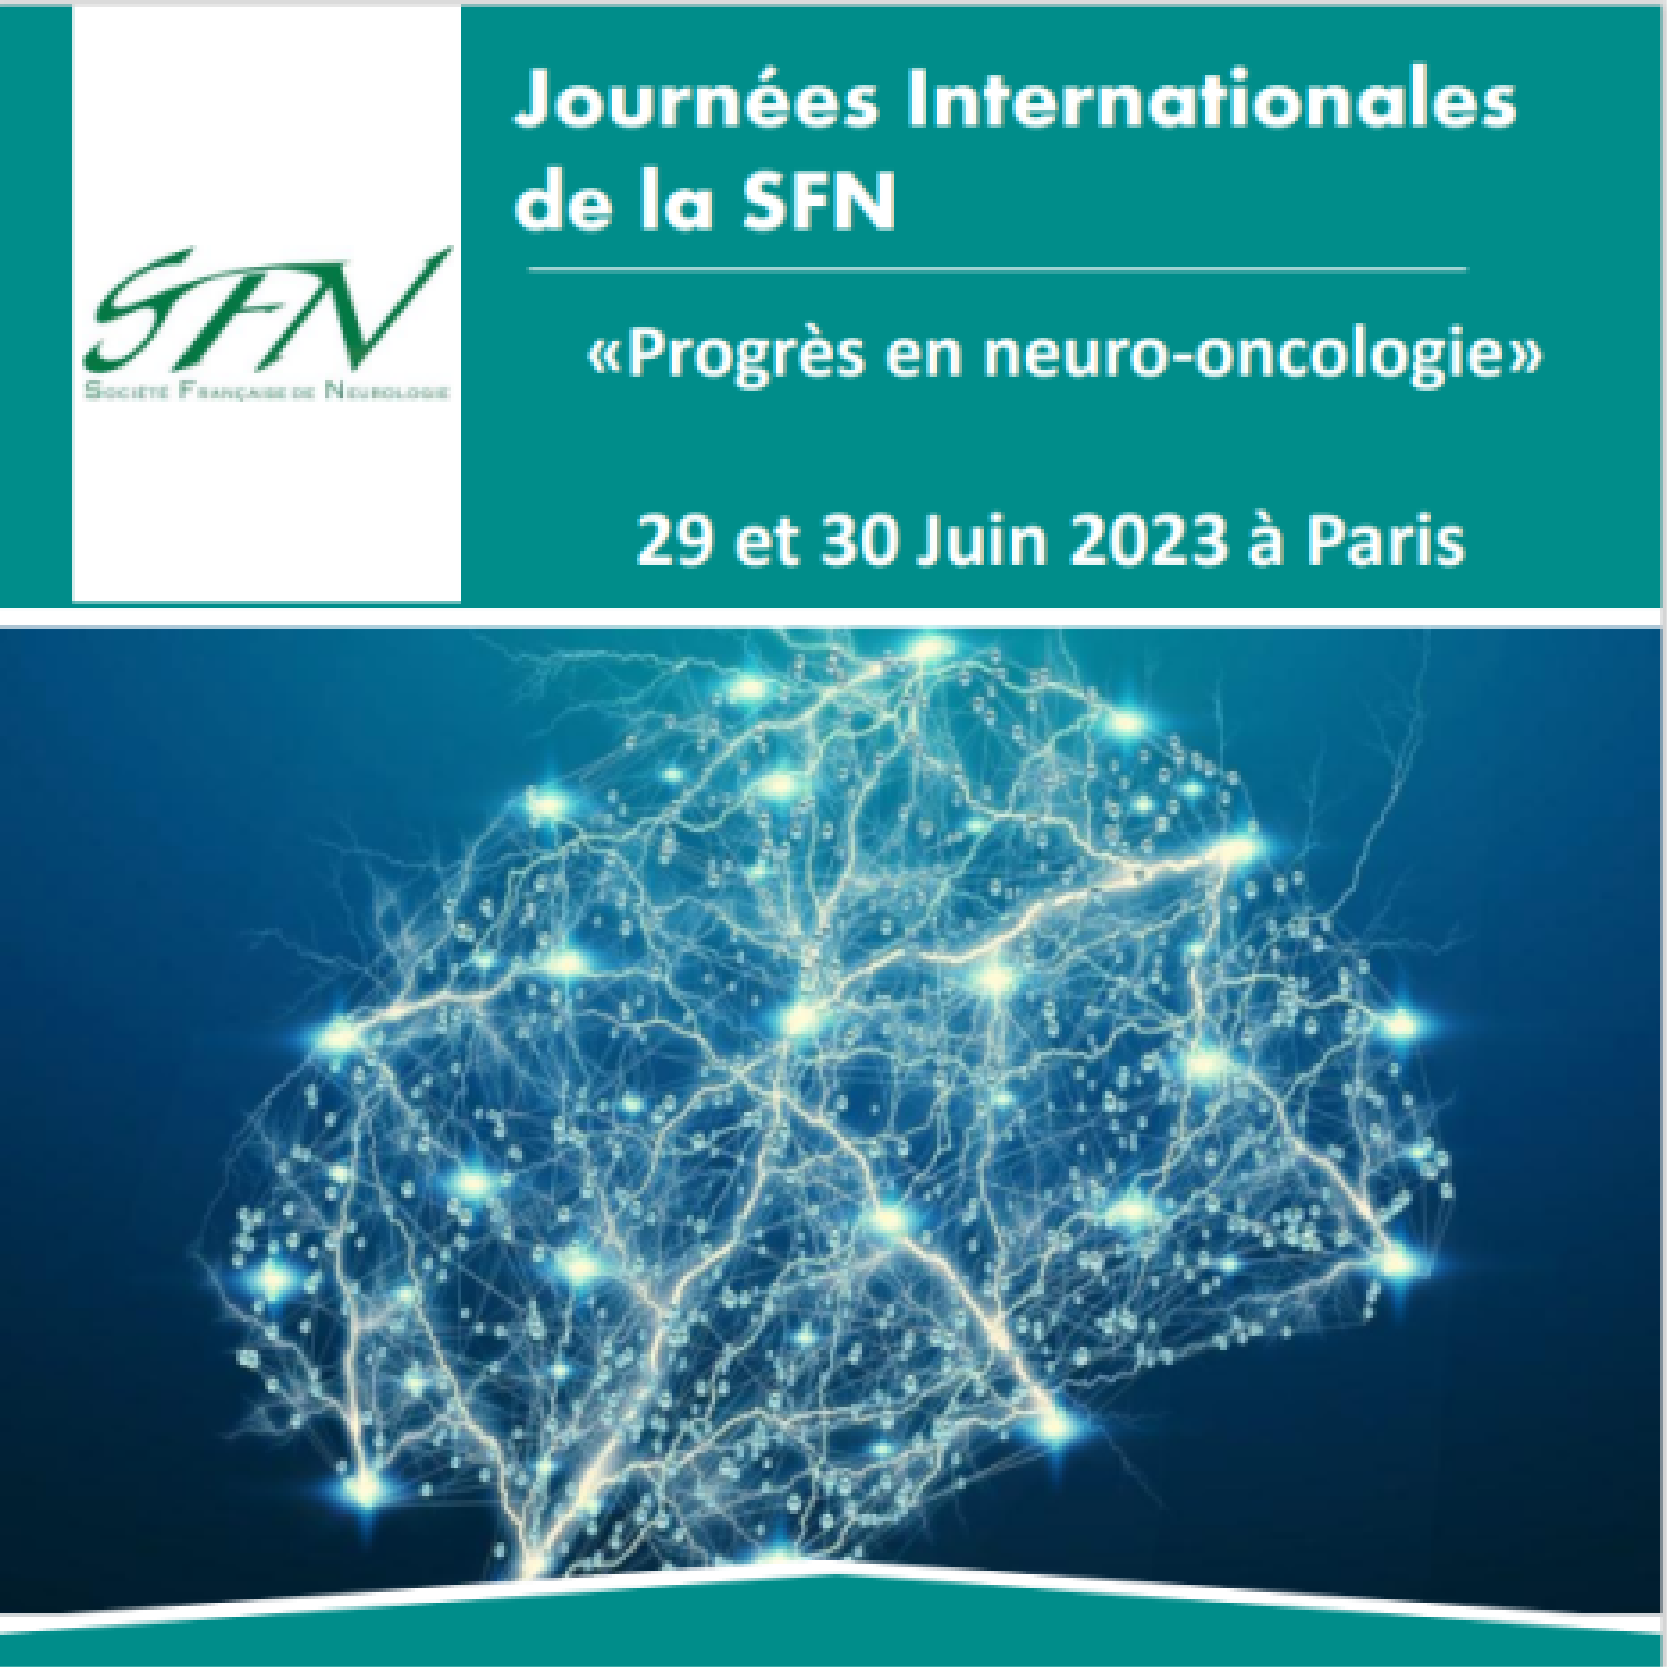 Journées Internationales de la Société Française de Neurologie - SFN 2023